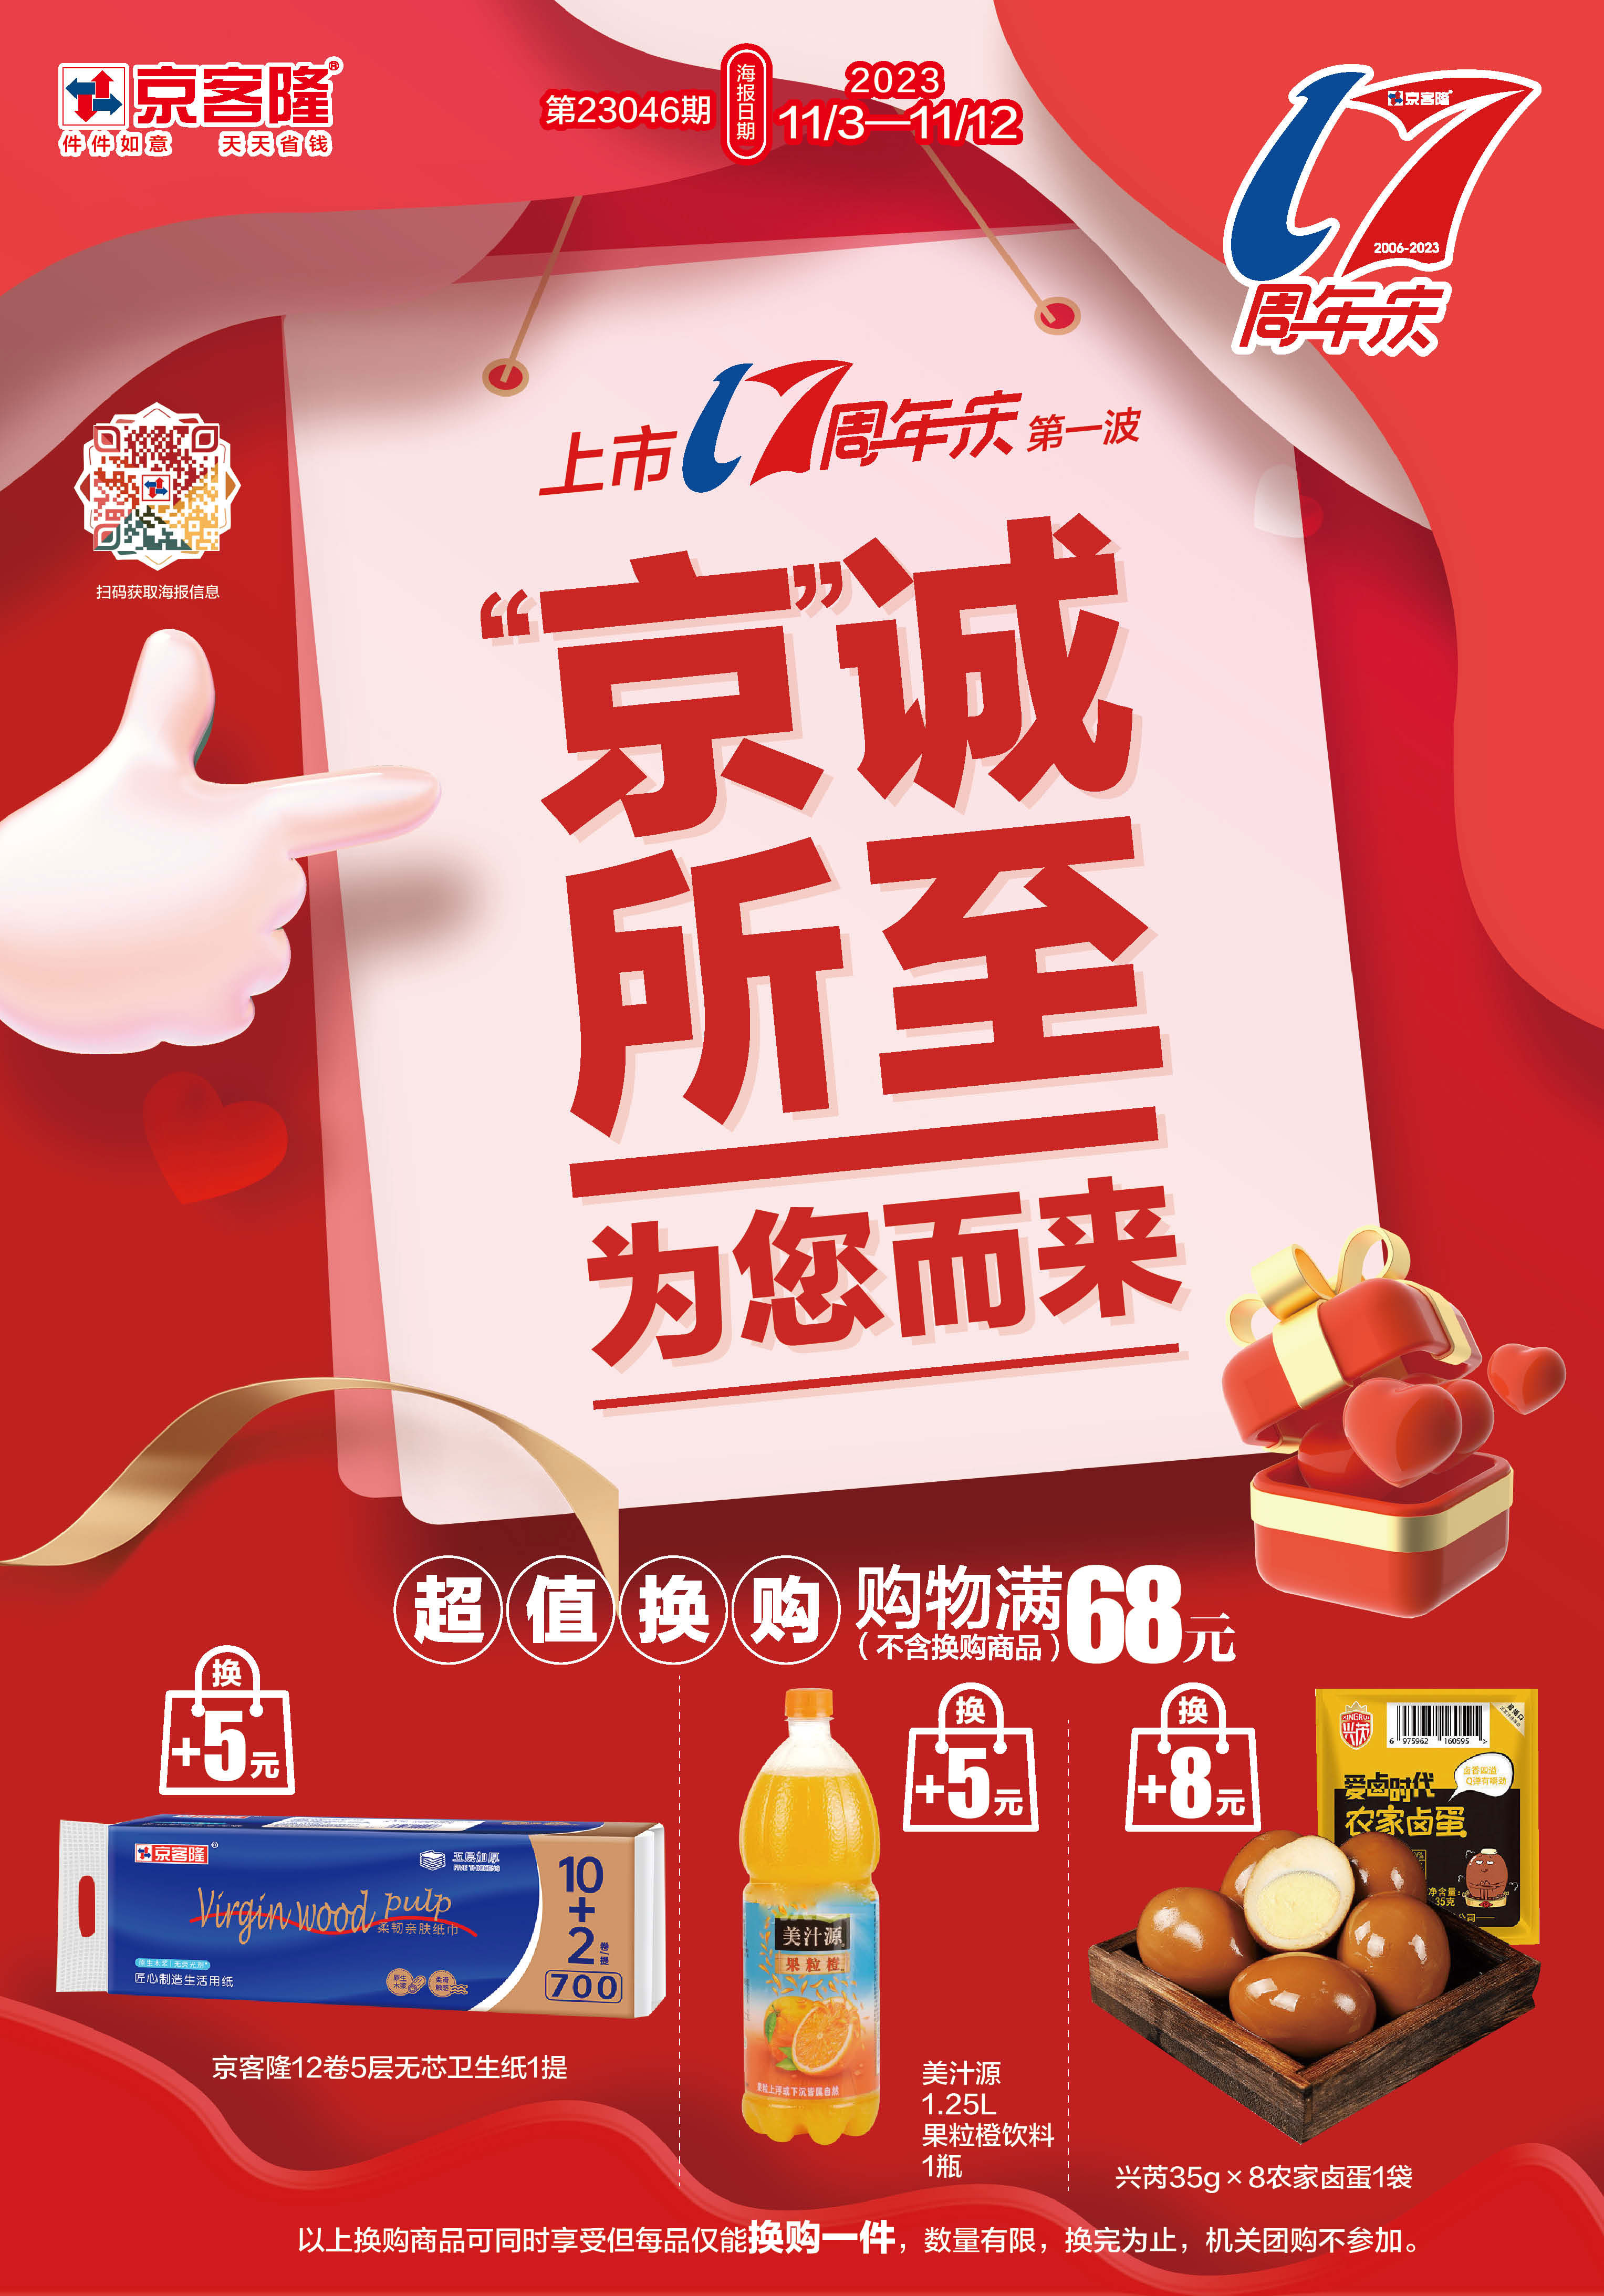 北京京客隆超市促销海报（第23046期）